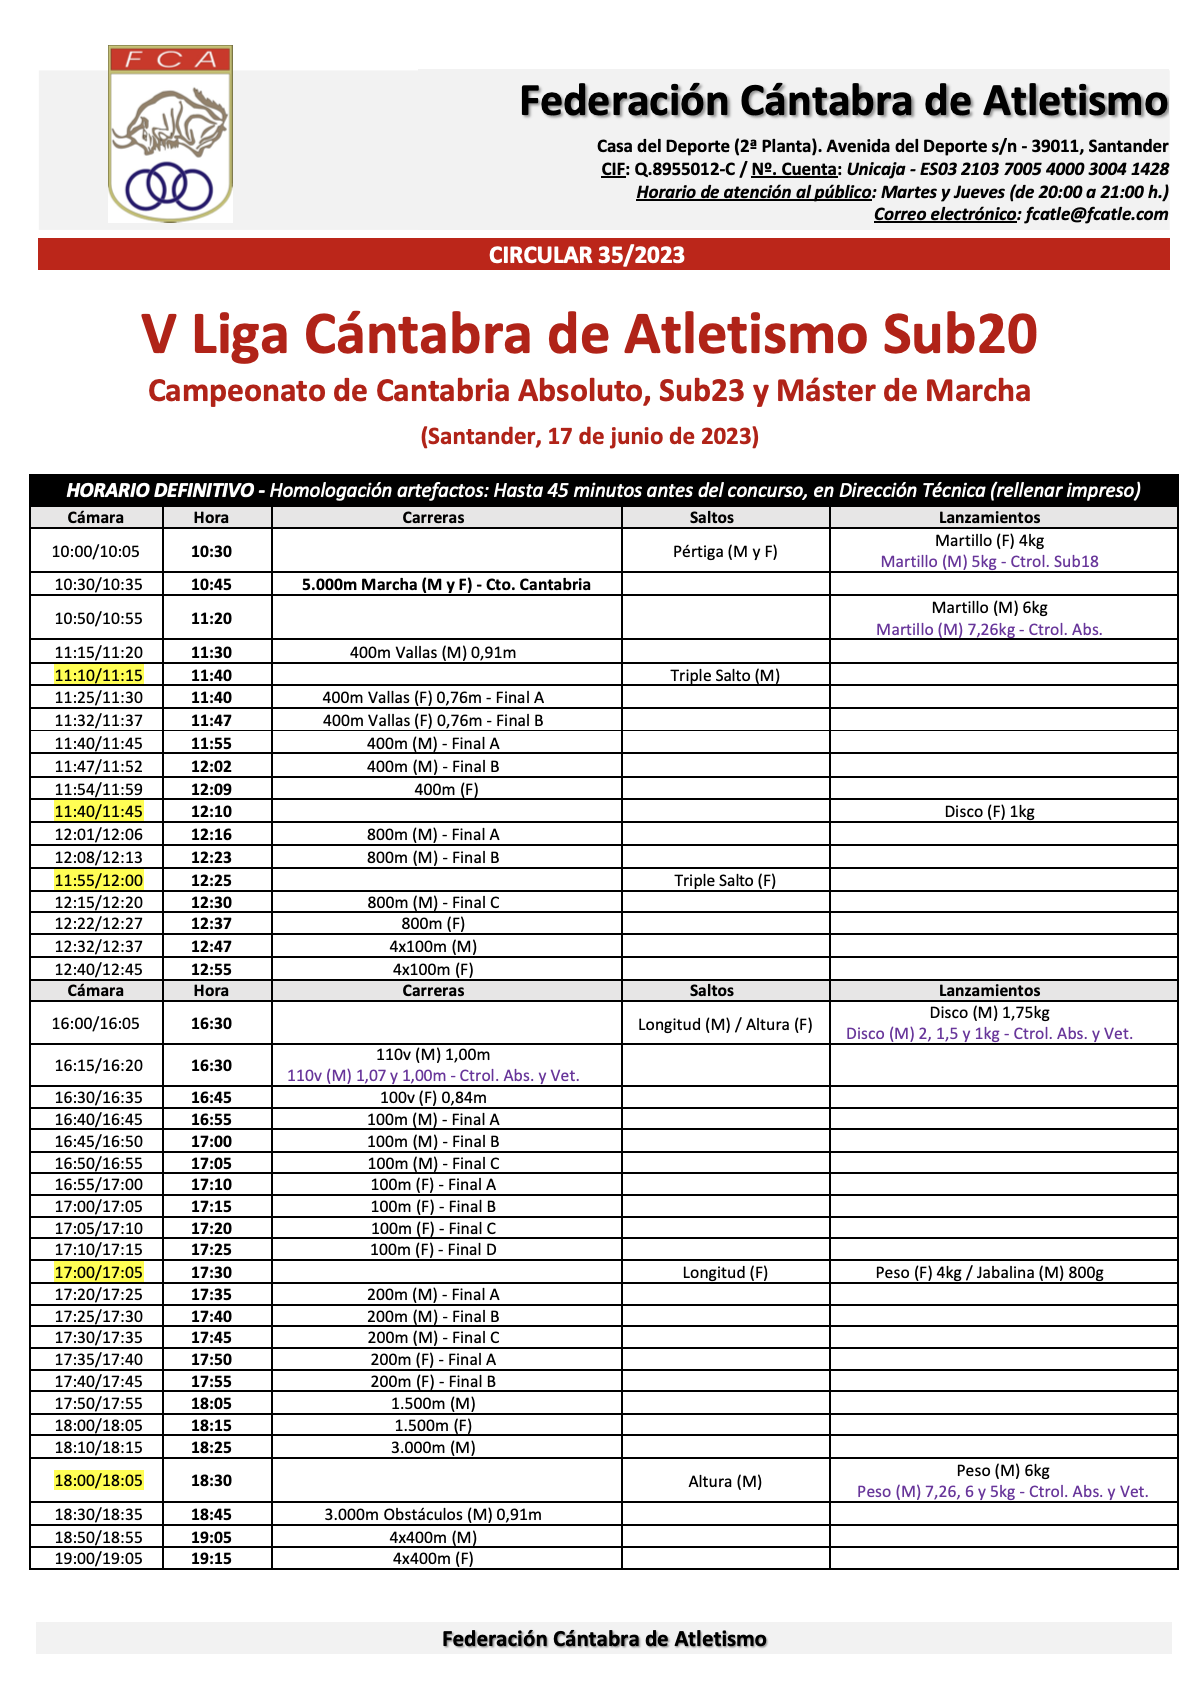 V Liga Cántabra de Atletismo Sub20 / Campeonato de Cantabria Absoluto, Sub23 y Máster de Marcha @ Santander, Cantabria